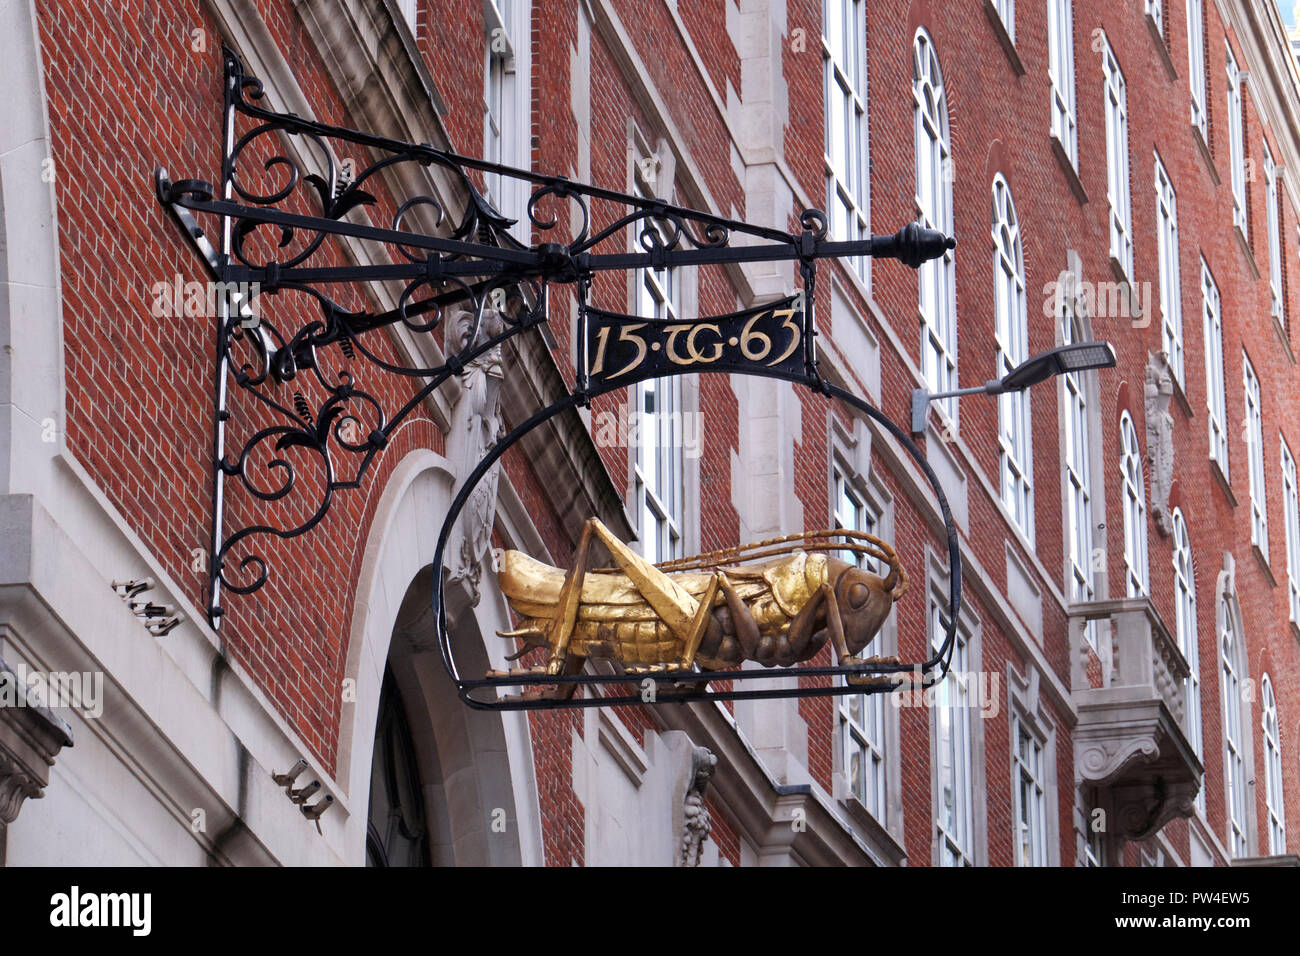 Die goldenen grasshopper Insignien des 16. Jahrhunderts Kaufmann, Thomas Gresham, Lombard Street, London Stockfoto